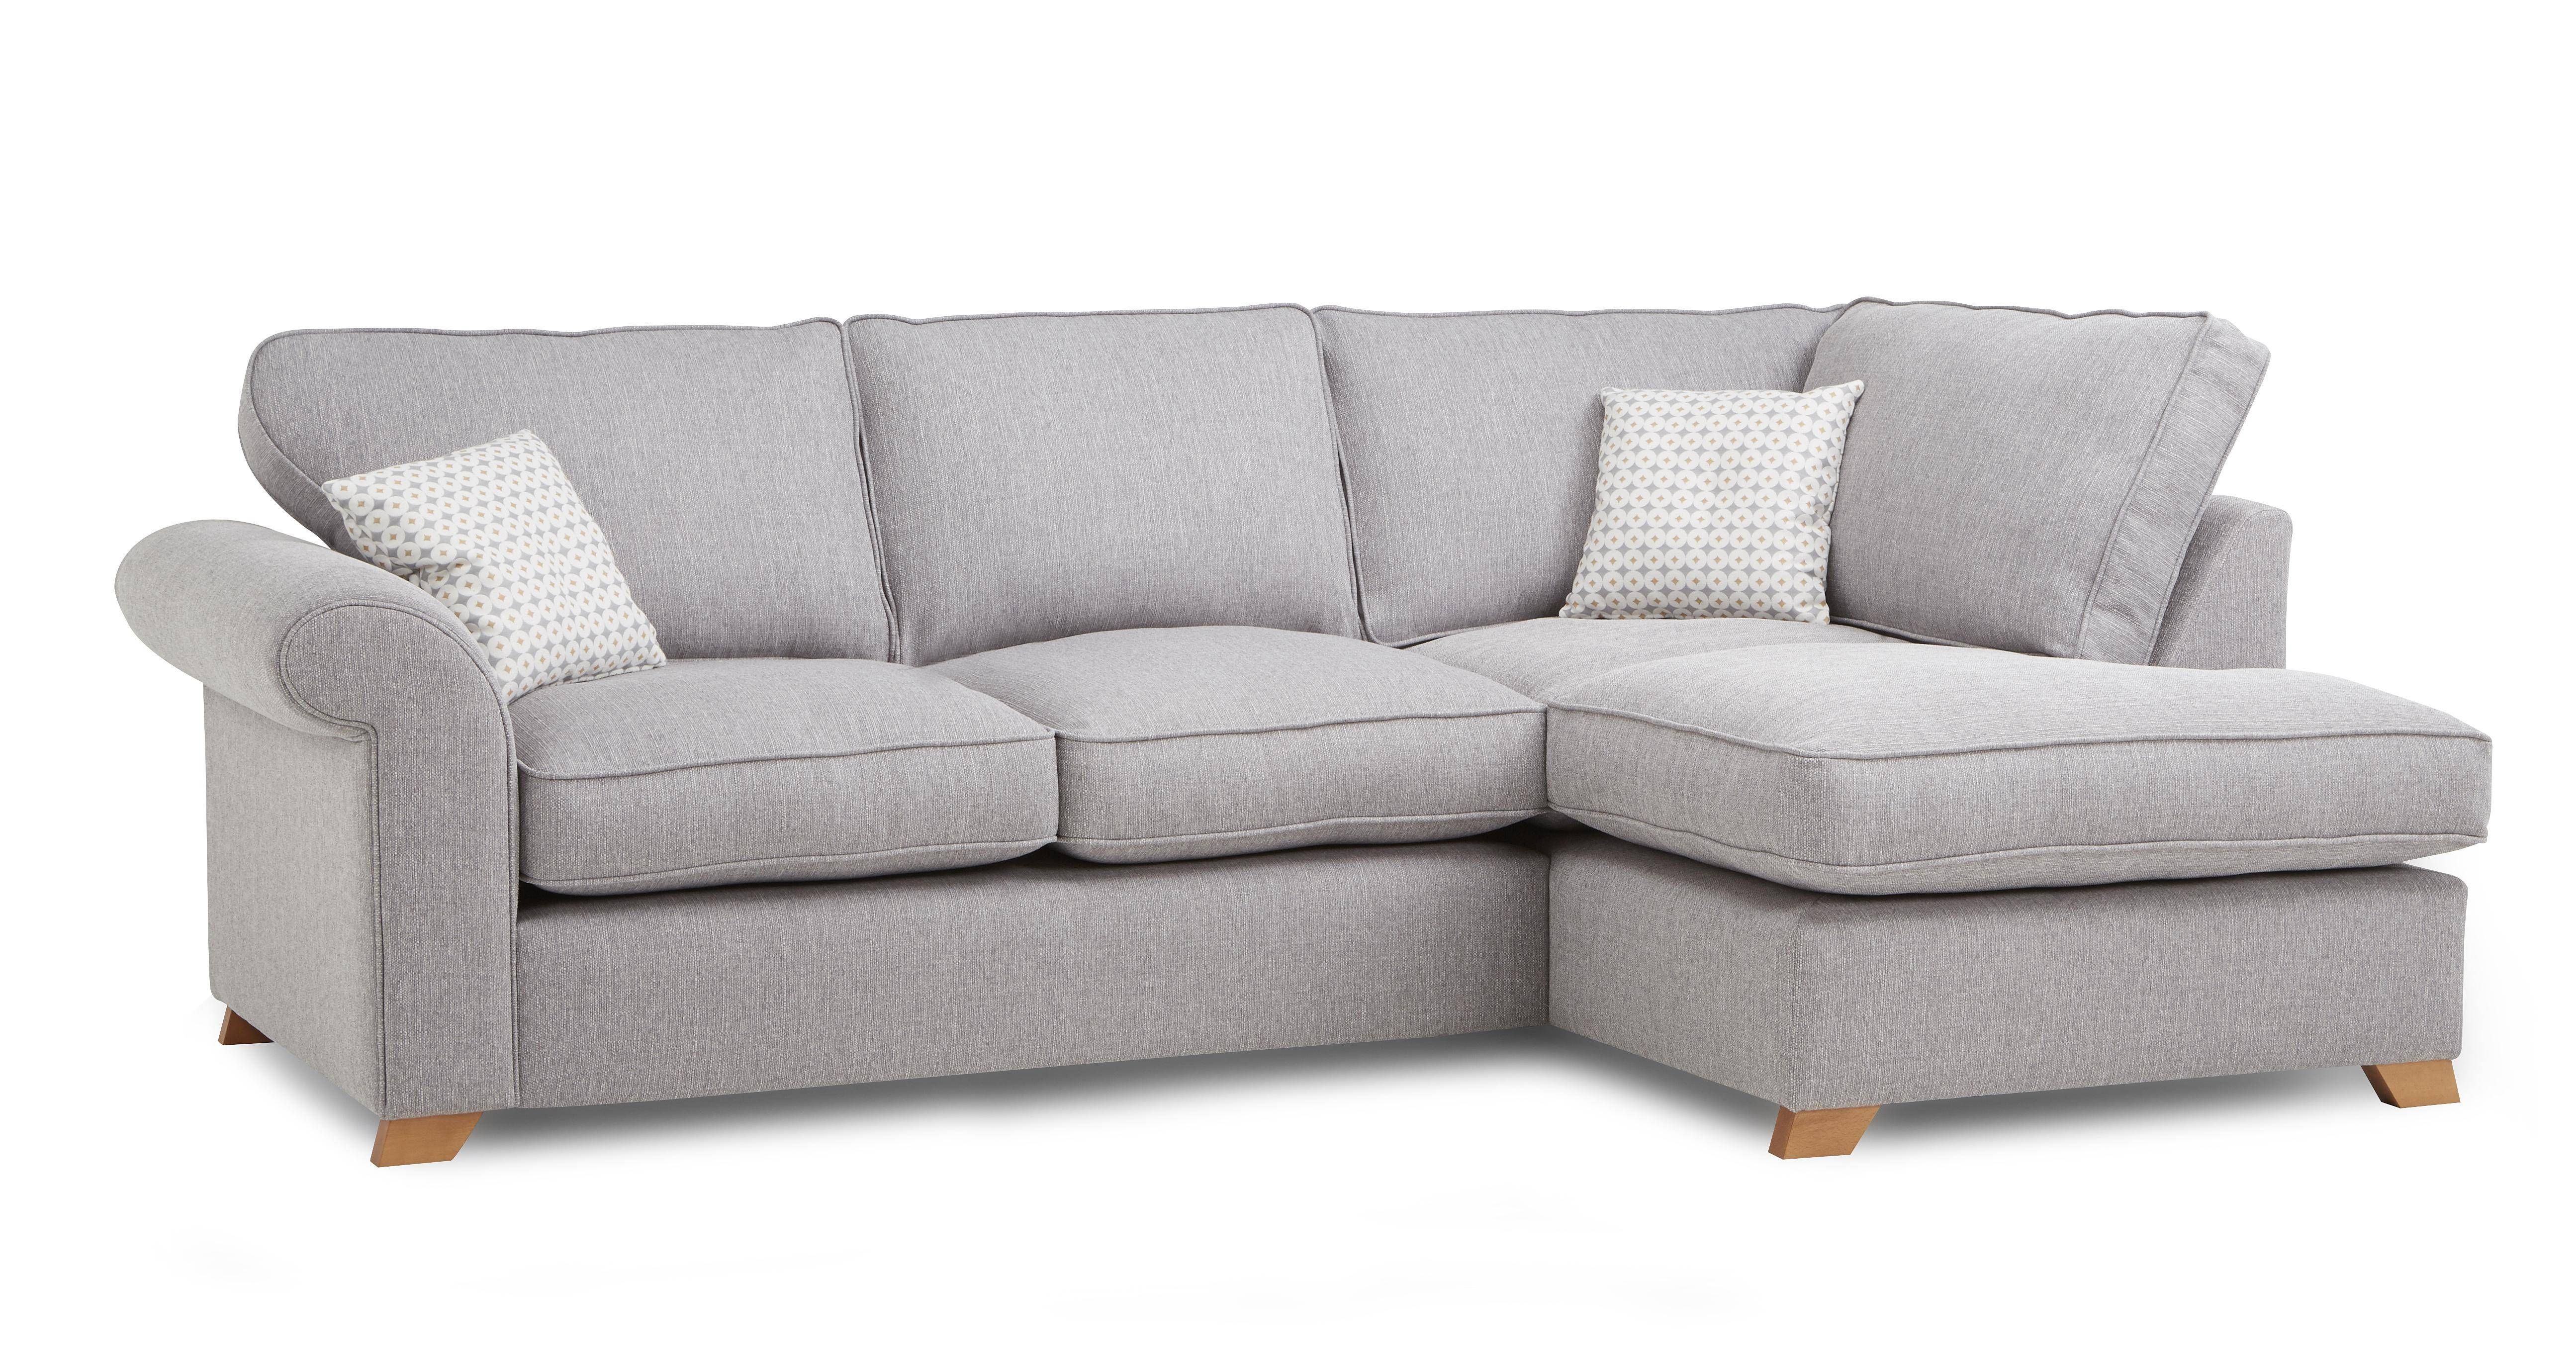 Sofas Center : Fascinating Cheap Grey Sofa Image Concept Smally Regarding Cheap Corner Sofas (View 28 of 30)